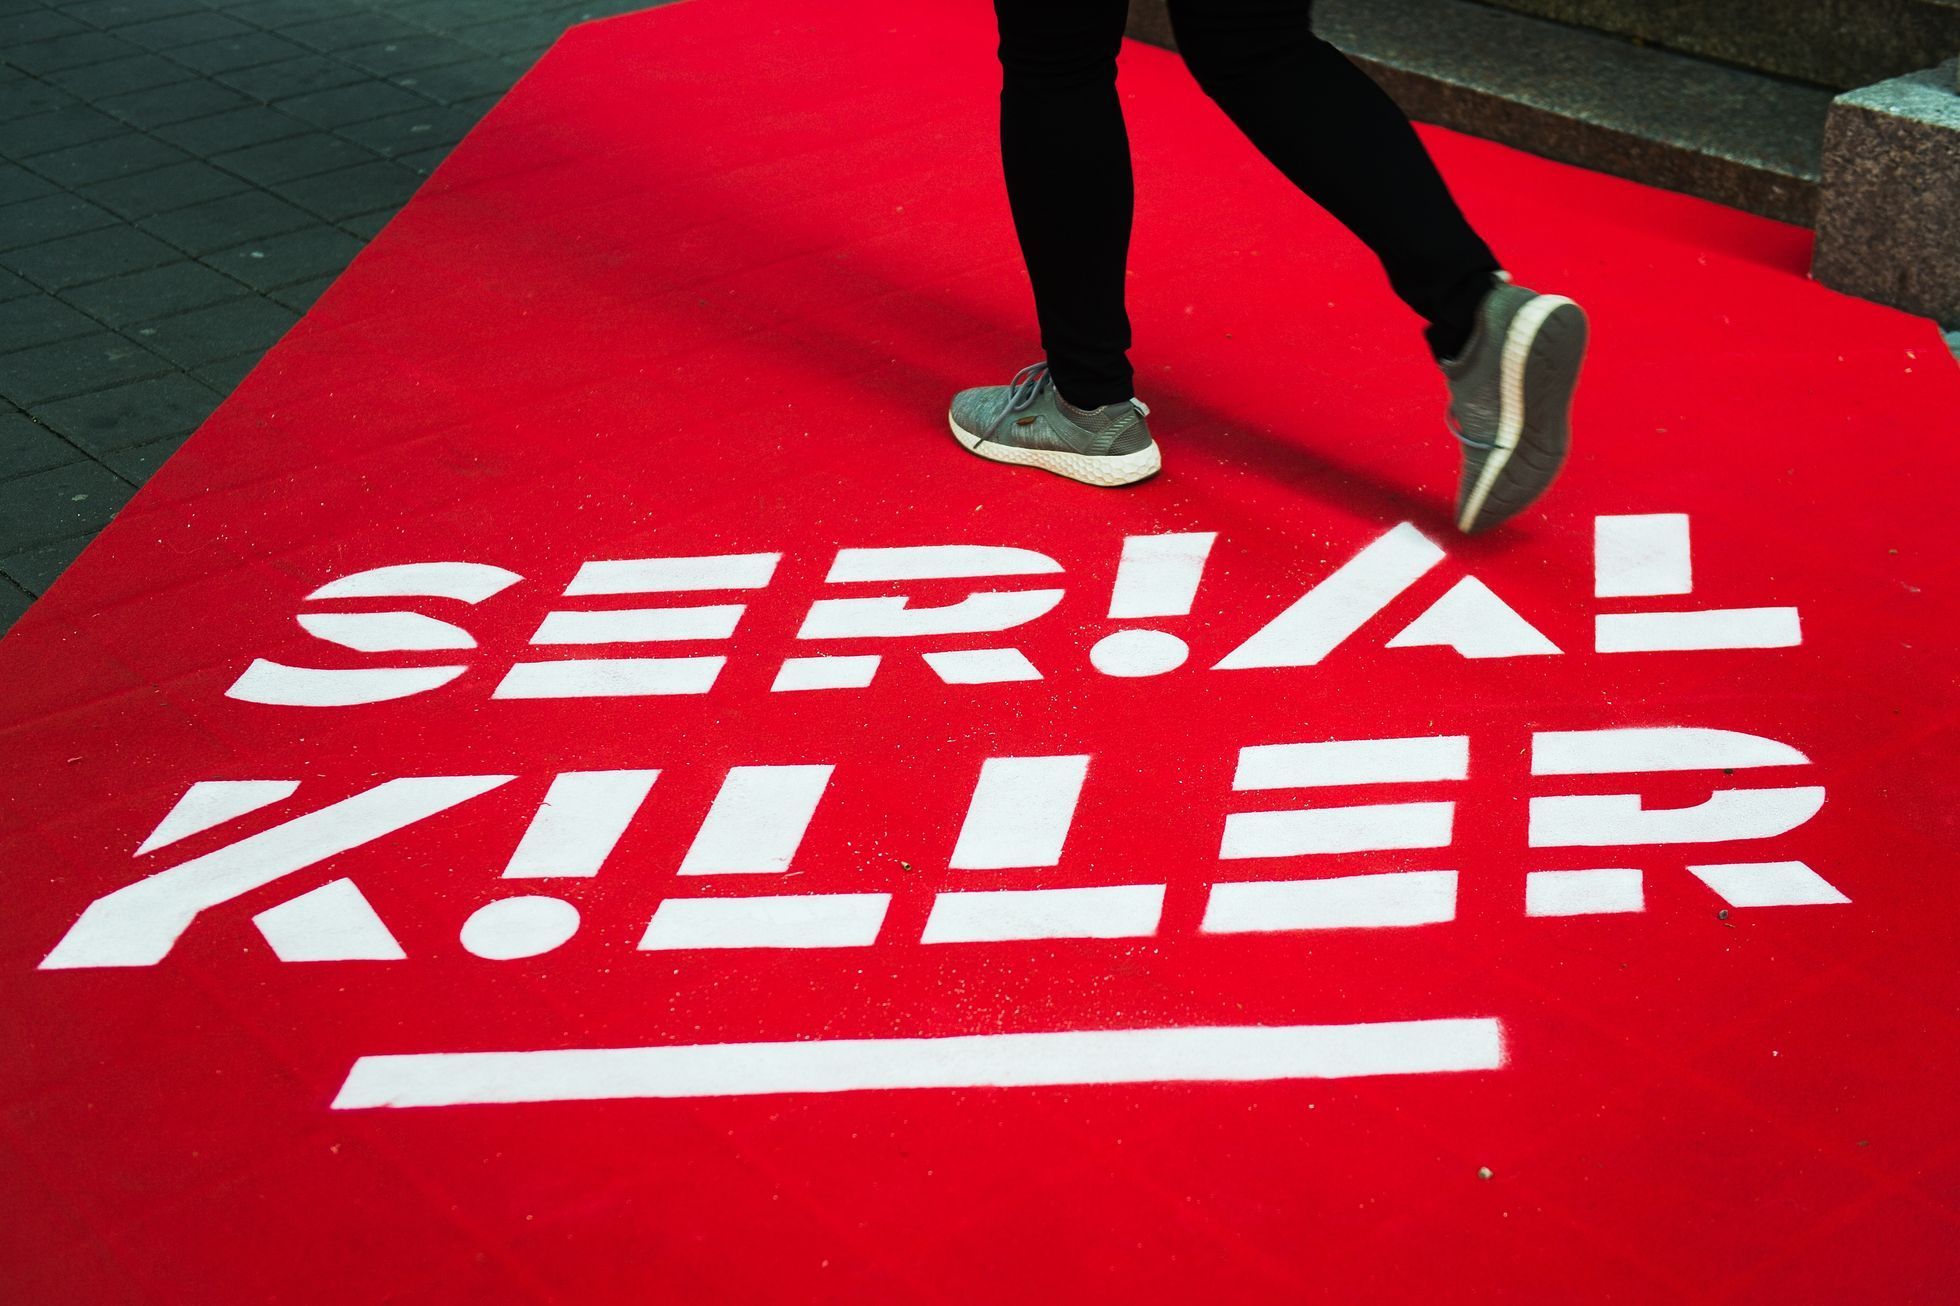 Serial Killer, festival, 2023